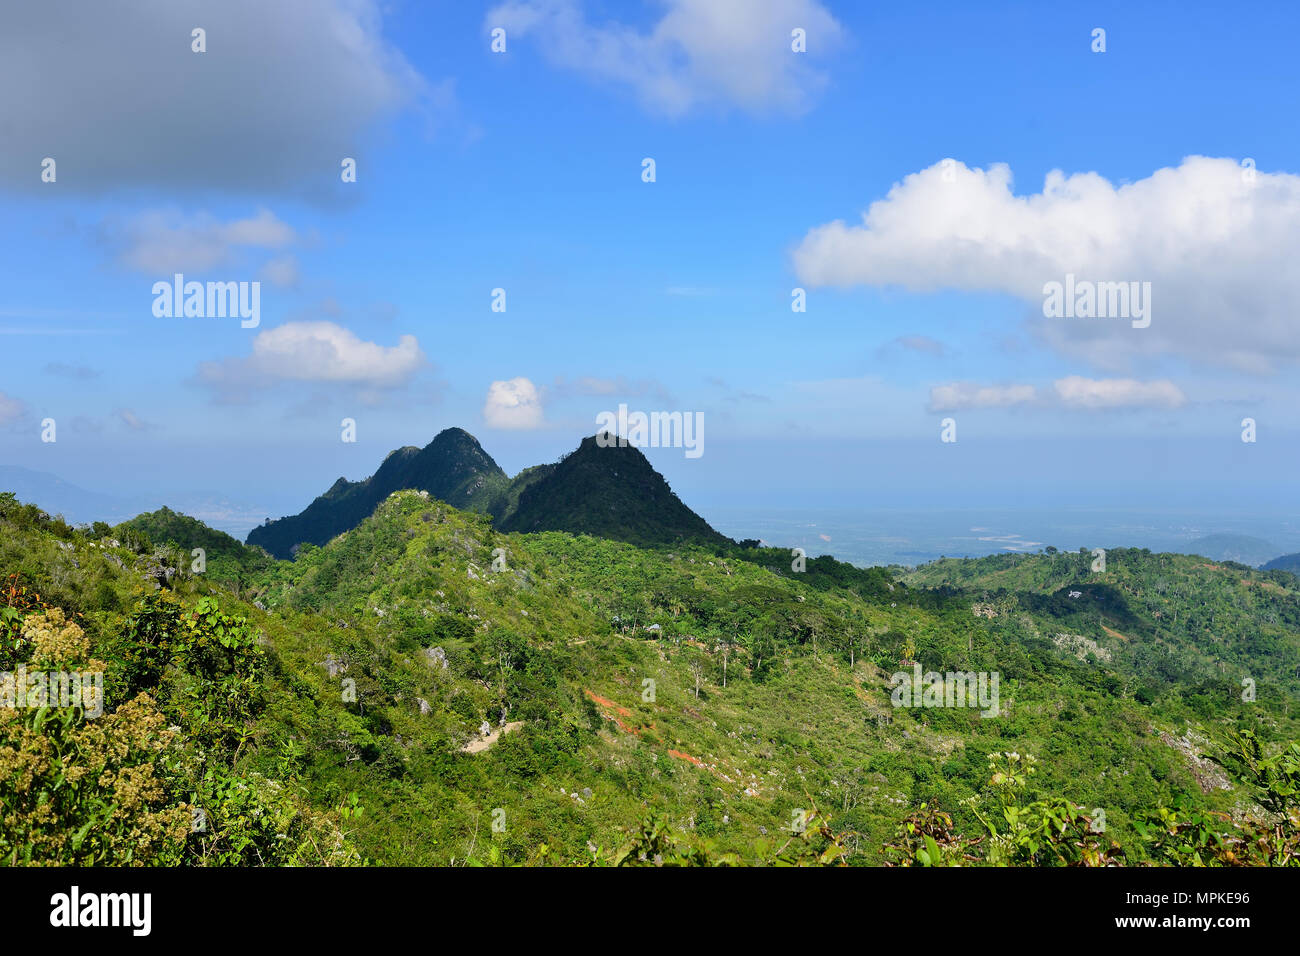 Mountain range over Haiti Stock Photo